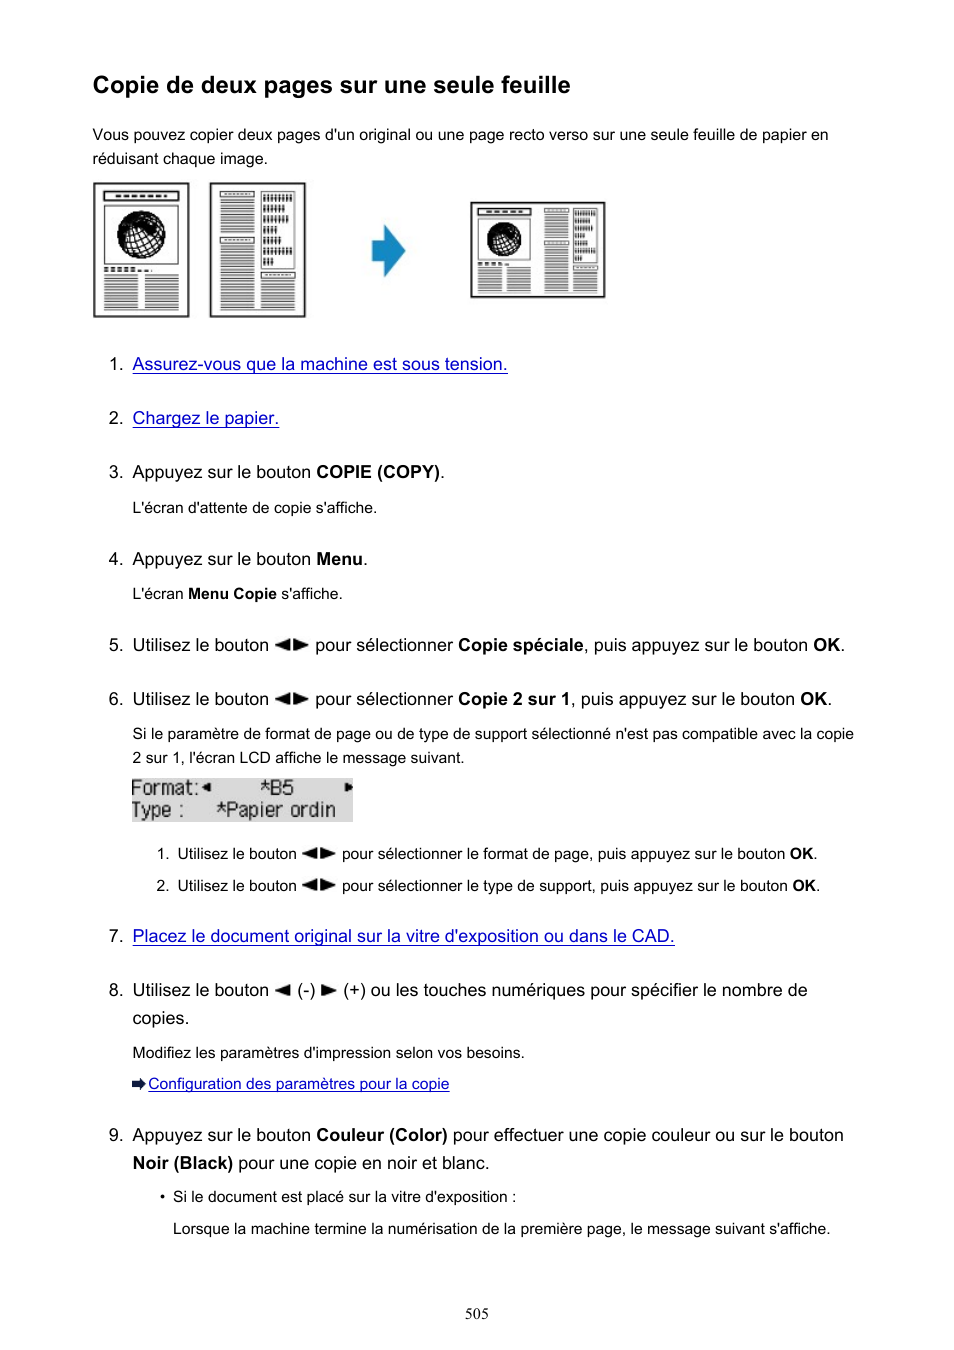 Copie de deux pages sur une seule feuille | Canon PIXMA MX535 Manuel d'utilisation | Page 505 / 1066